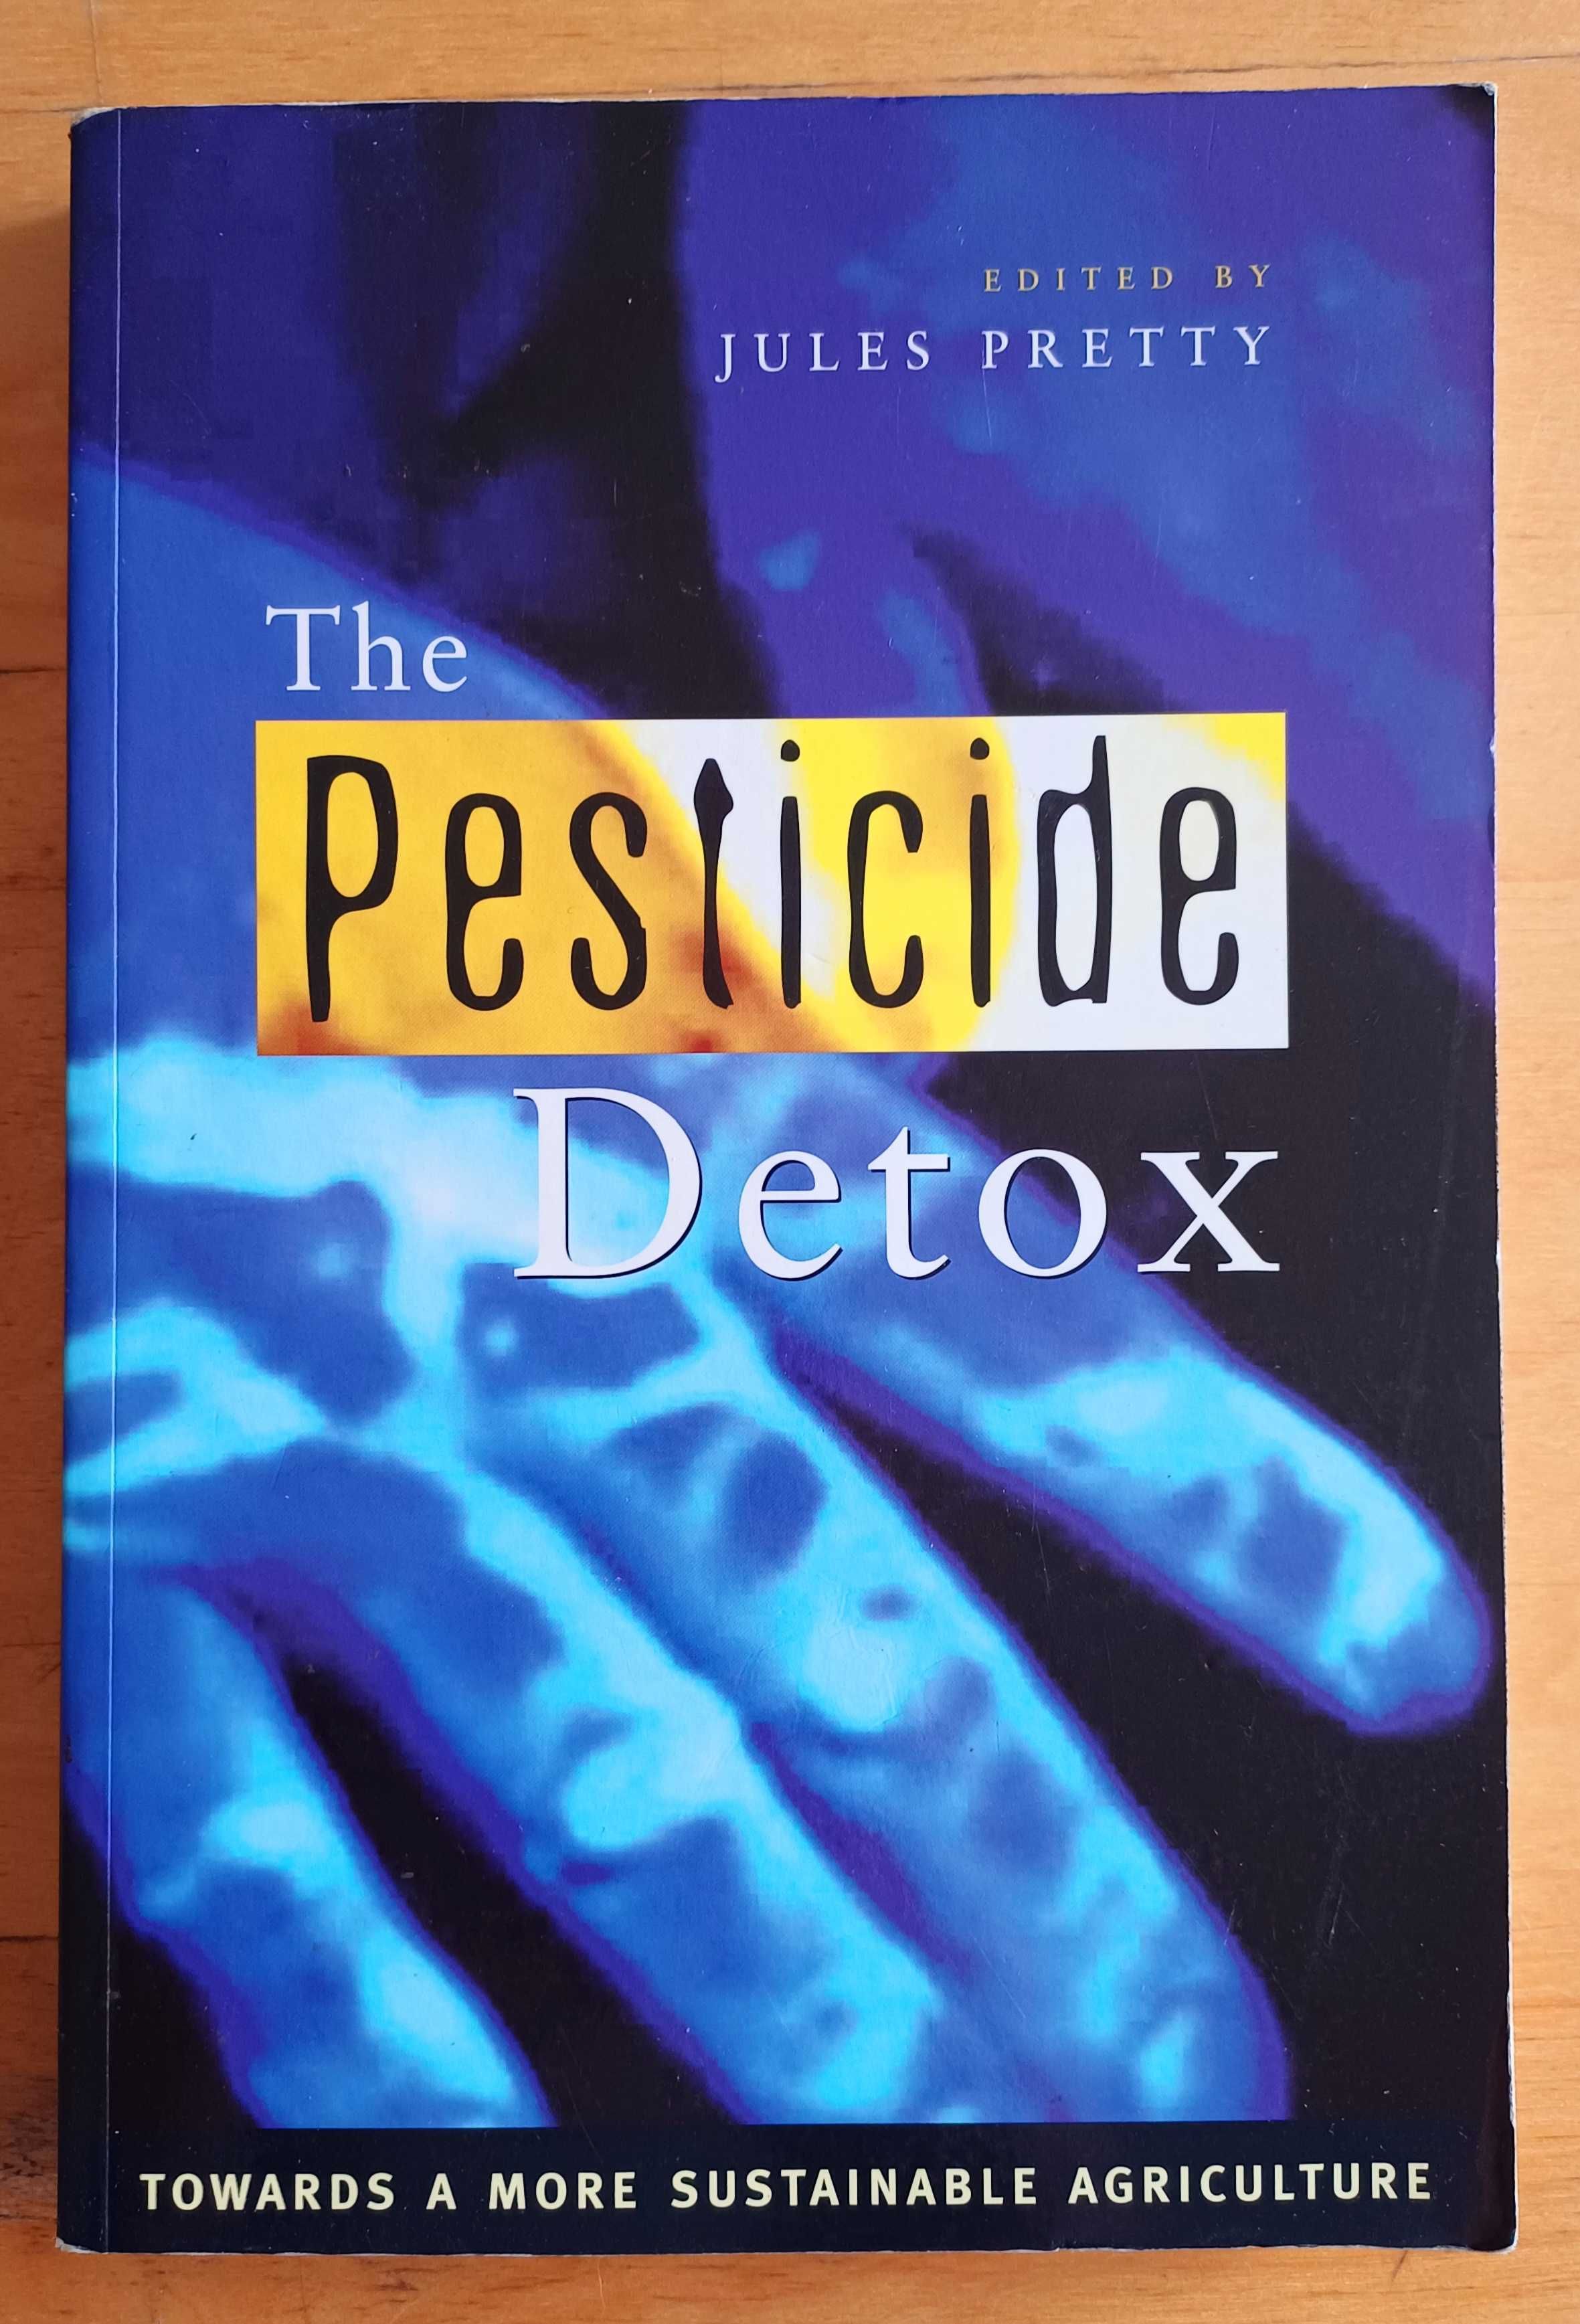 Jules Pretty - The Pesticide Detox